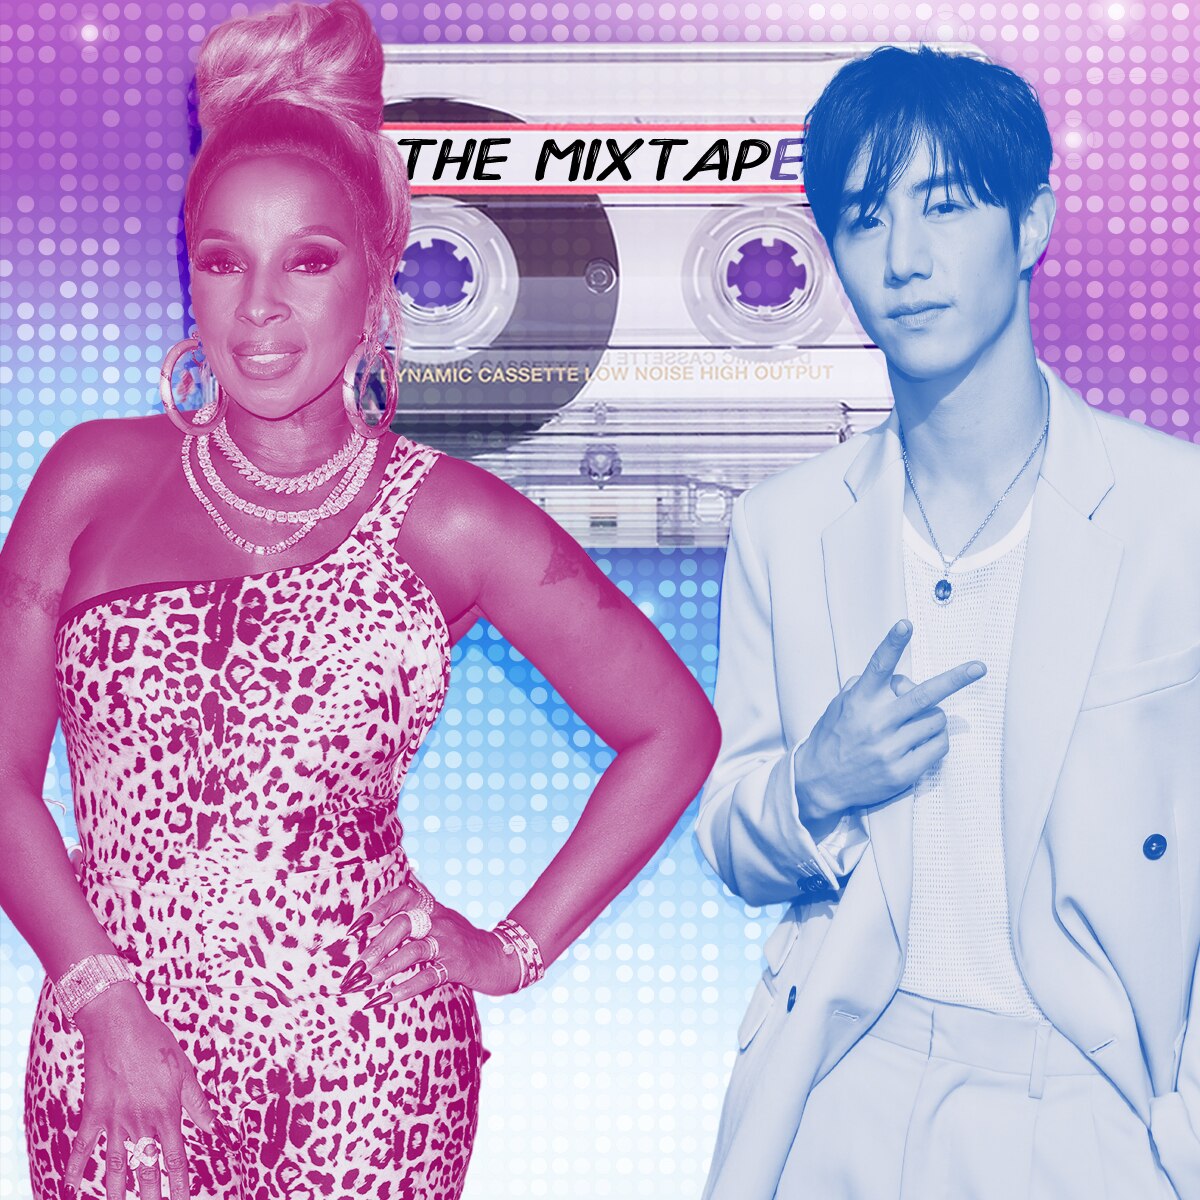 The MixtapE!, Mary J. Blige and Mark Tuan